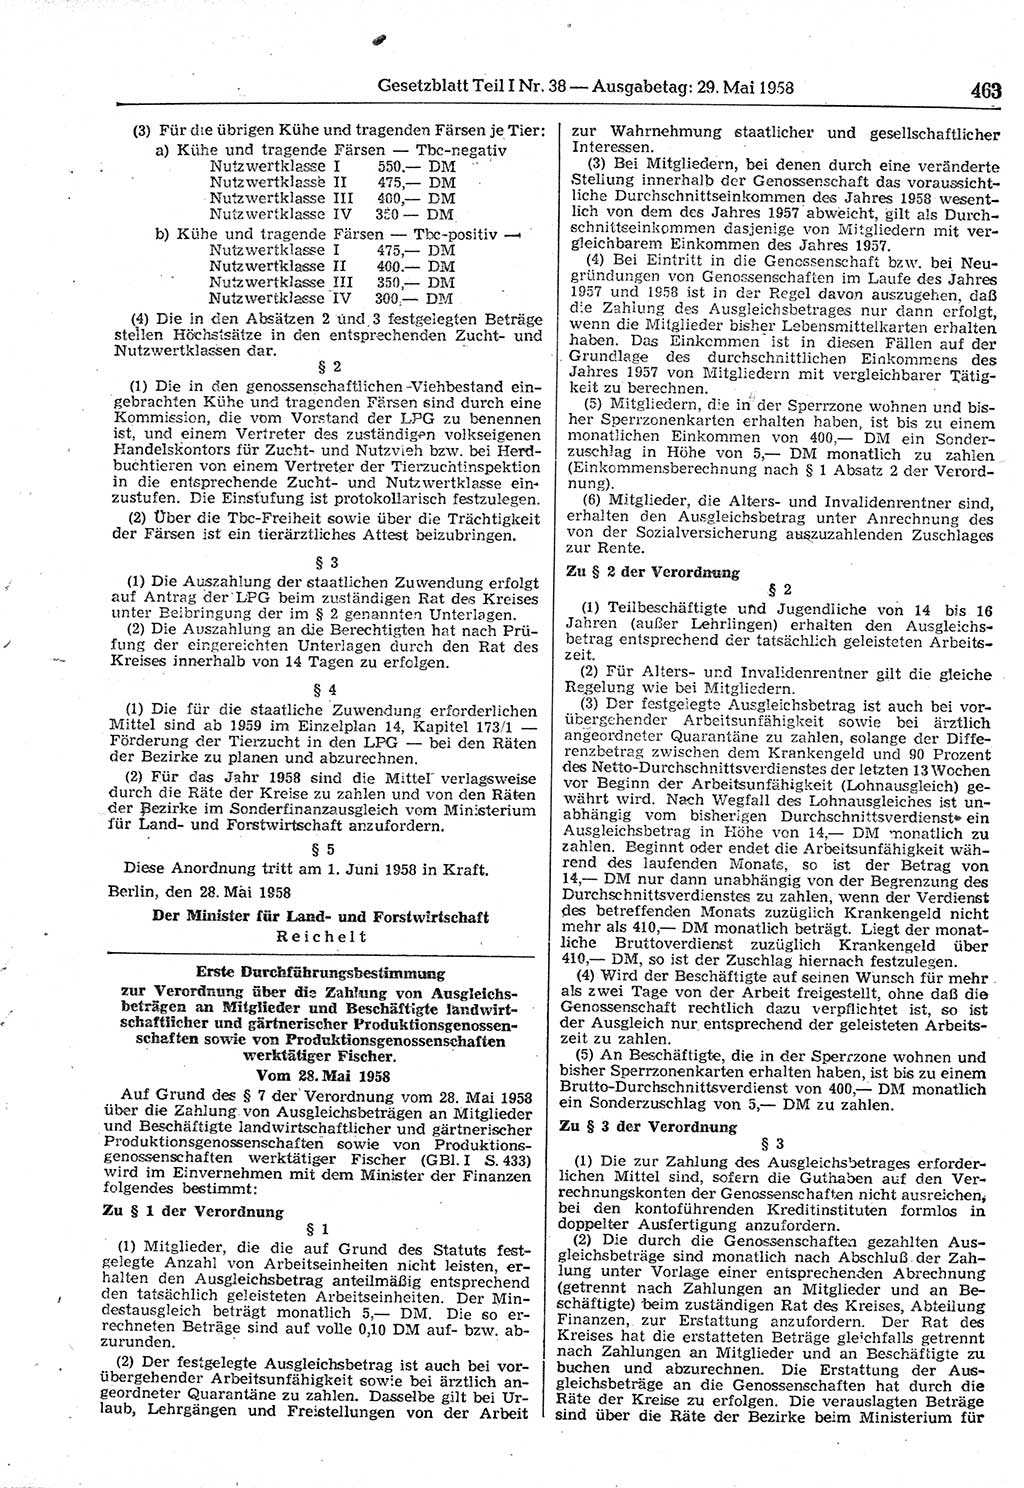 Gesetzblatt (GBl.) der Deutschen Demokratischen Republik (DDR) Teil Ⅰ 1958, Seite 463 (GBl. DDR Ⅰ 1958, S. 463)